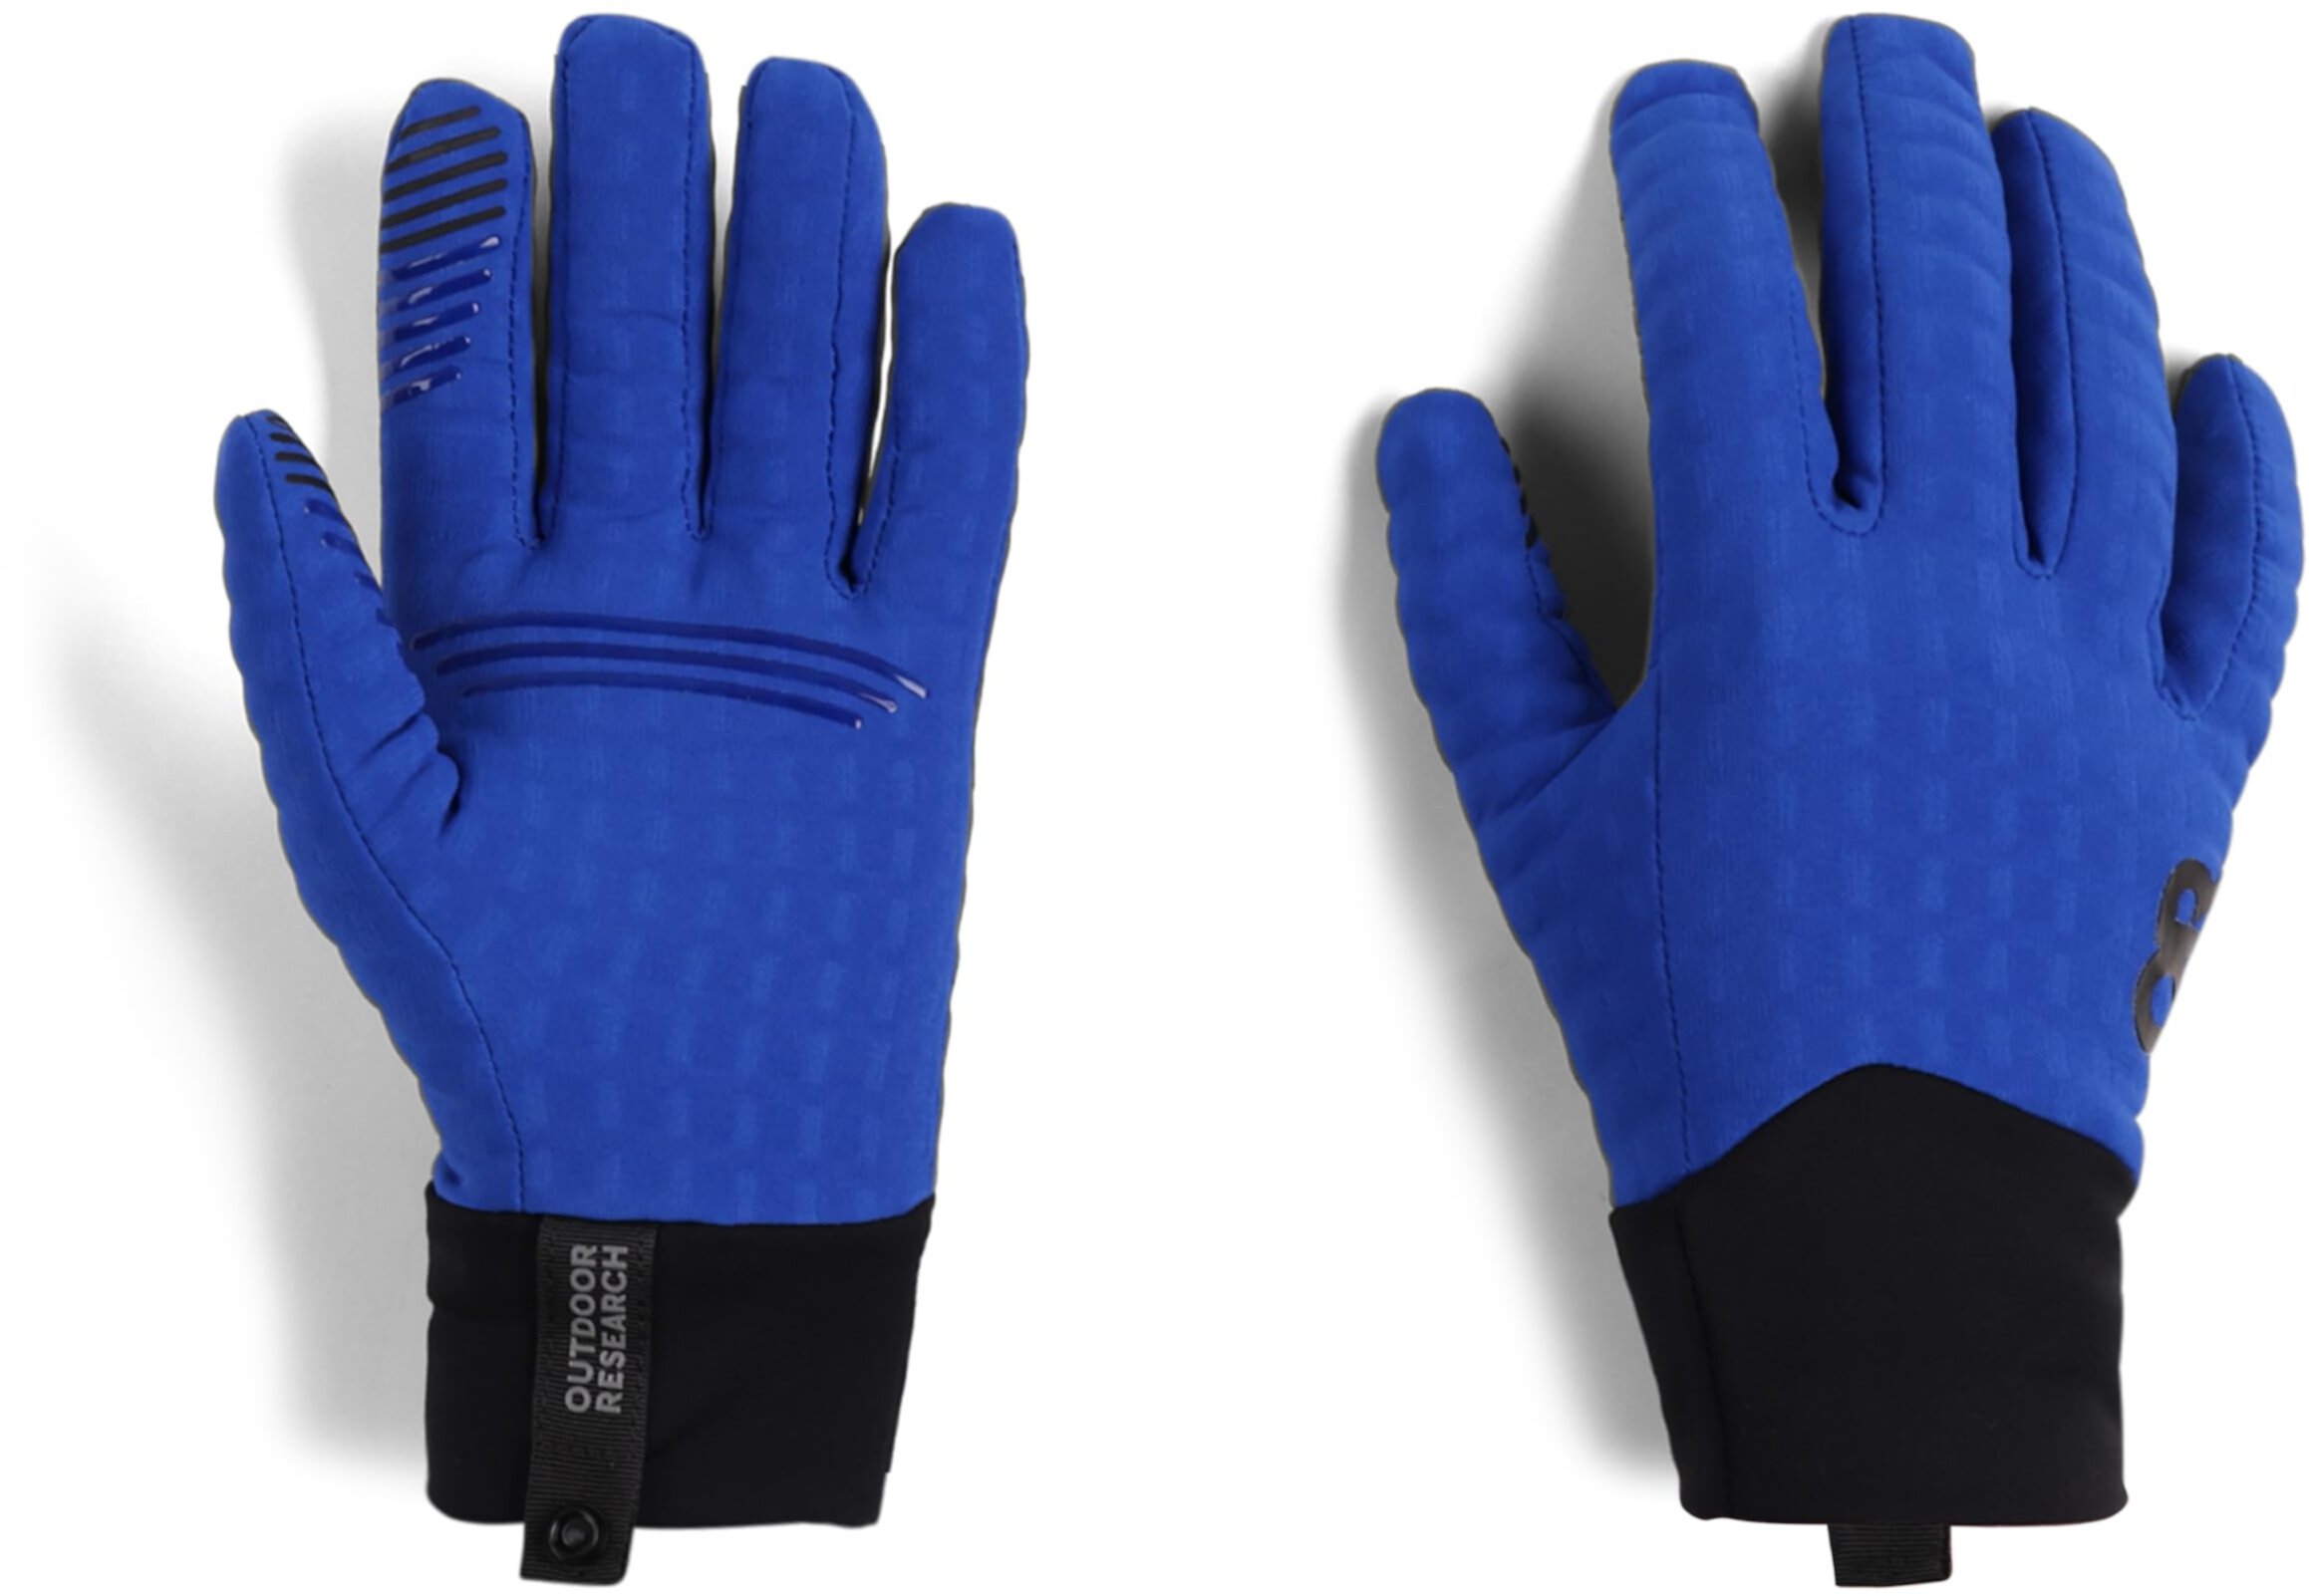 Тяжелые сенсорные перчатки Vigor Outdoor Research